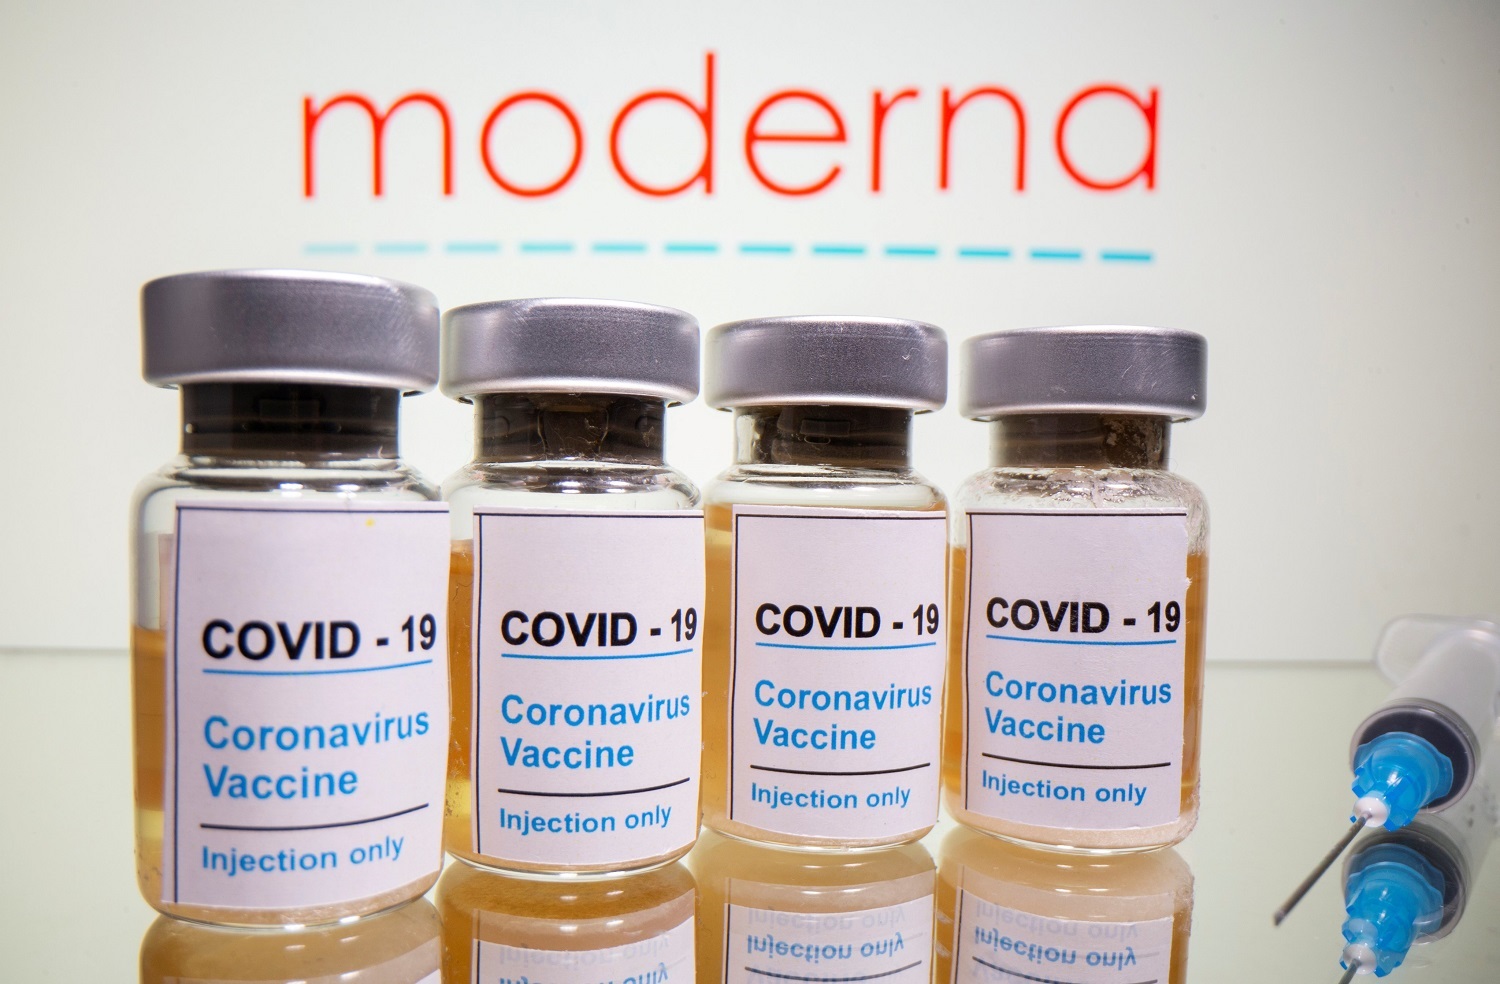 „Moderna“ pranešė, kad jos COVID-19 vakcinos efektyvumas siekia 94,5 proc.